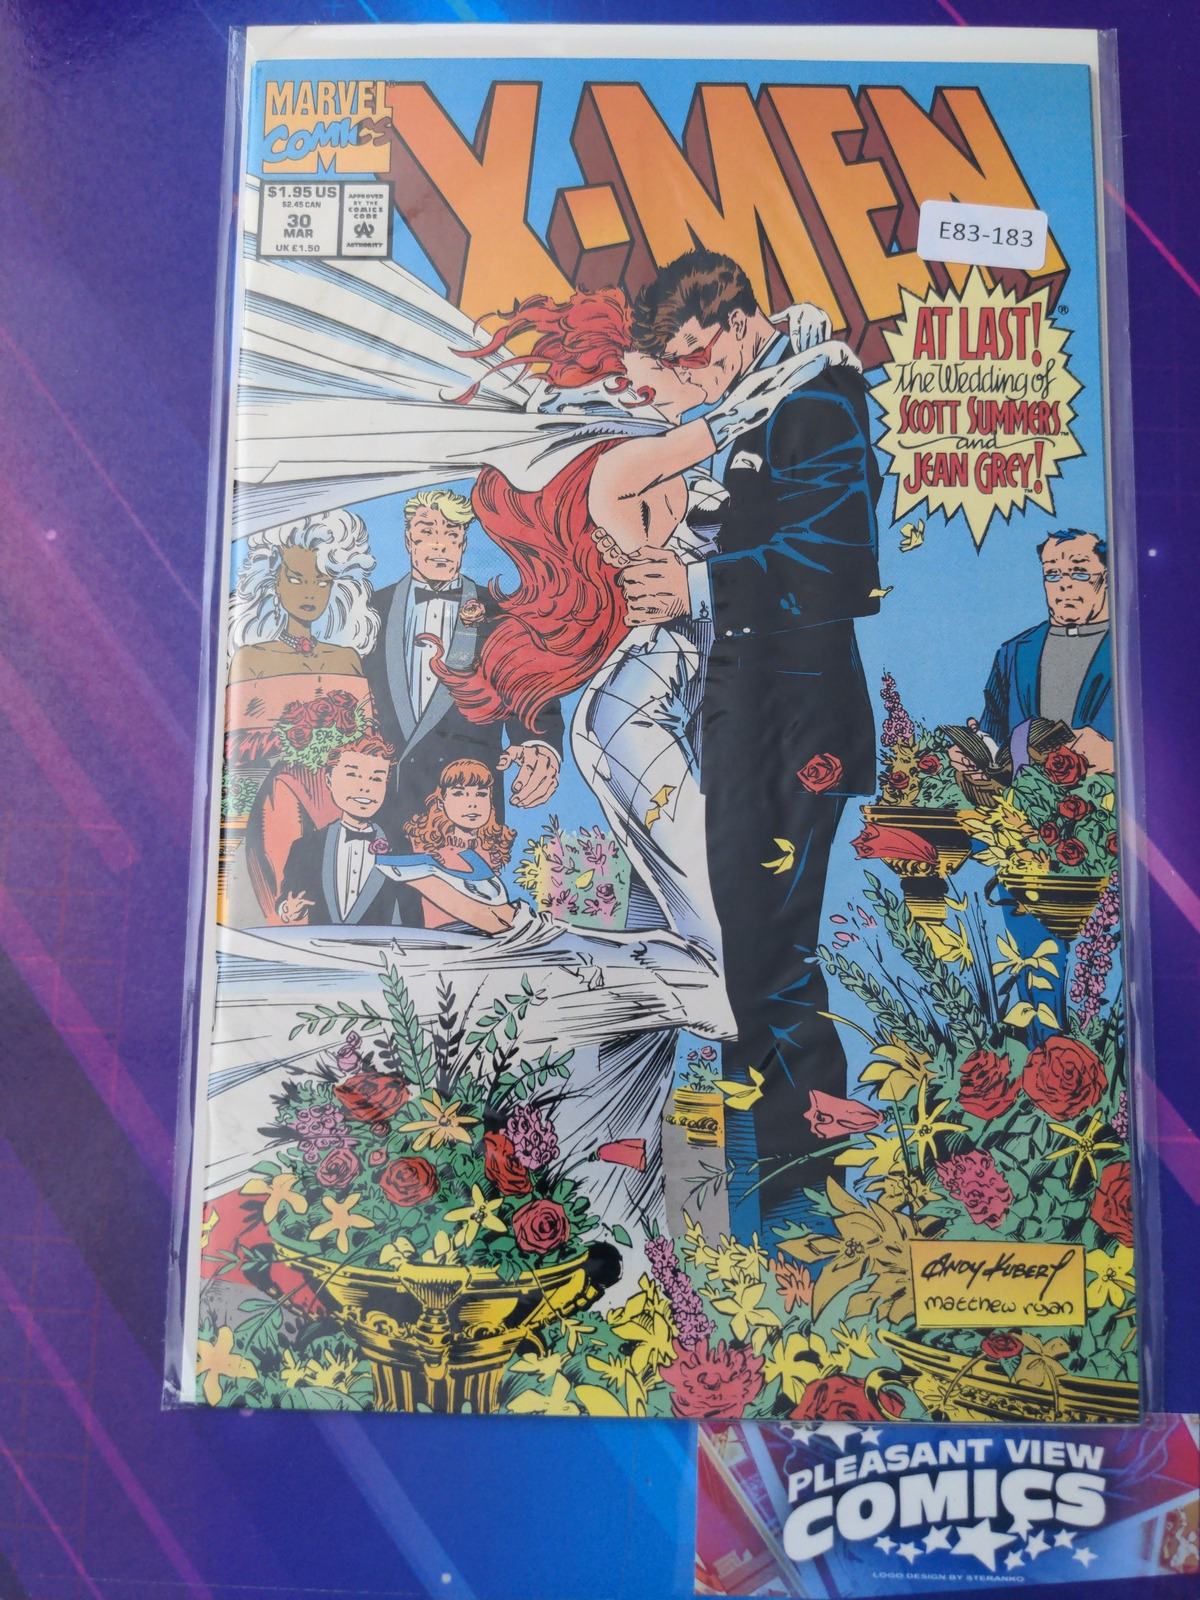 X-MEN #30 VOL. 2 HIGH GRADE MARVEL COMIC BOOK E83-183